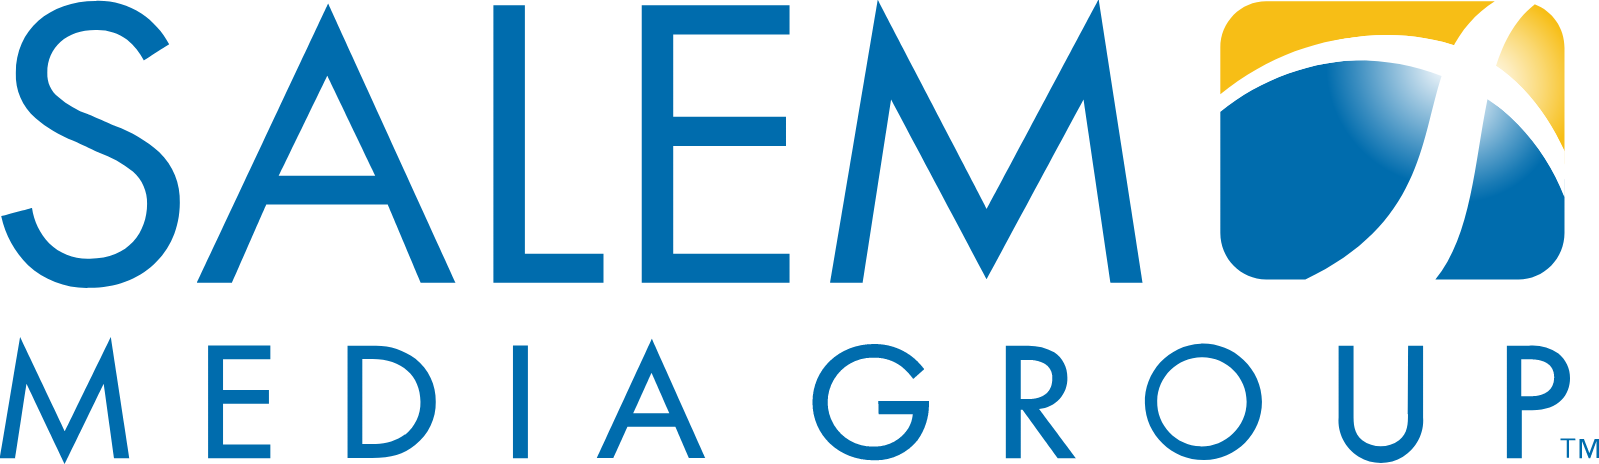 Salem Media Group
 logo large (transparent PNG)